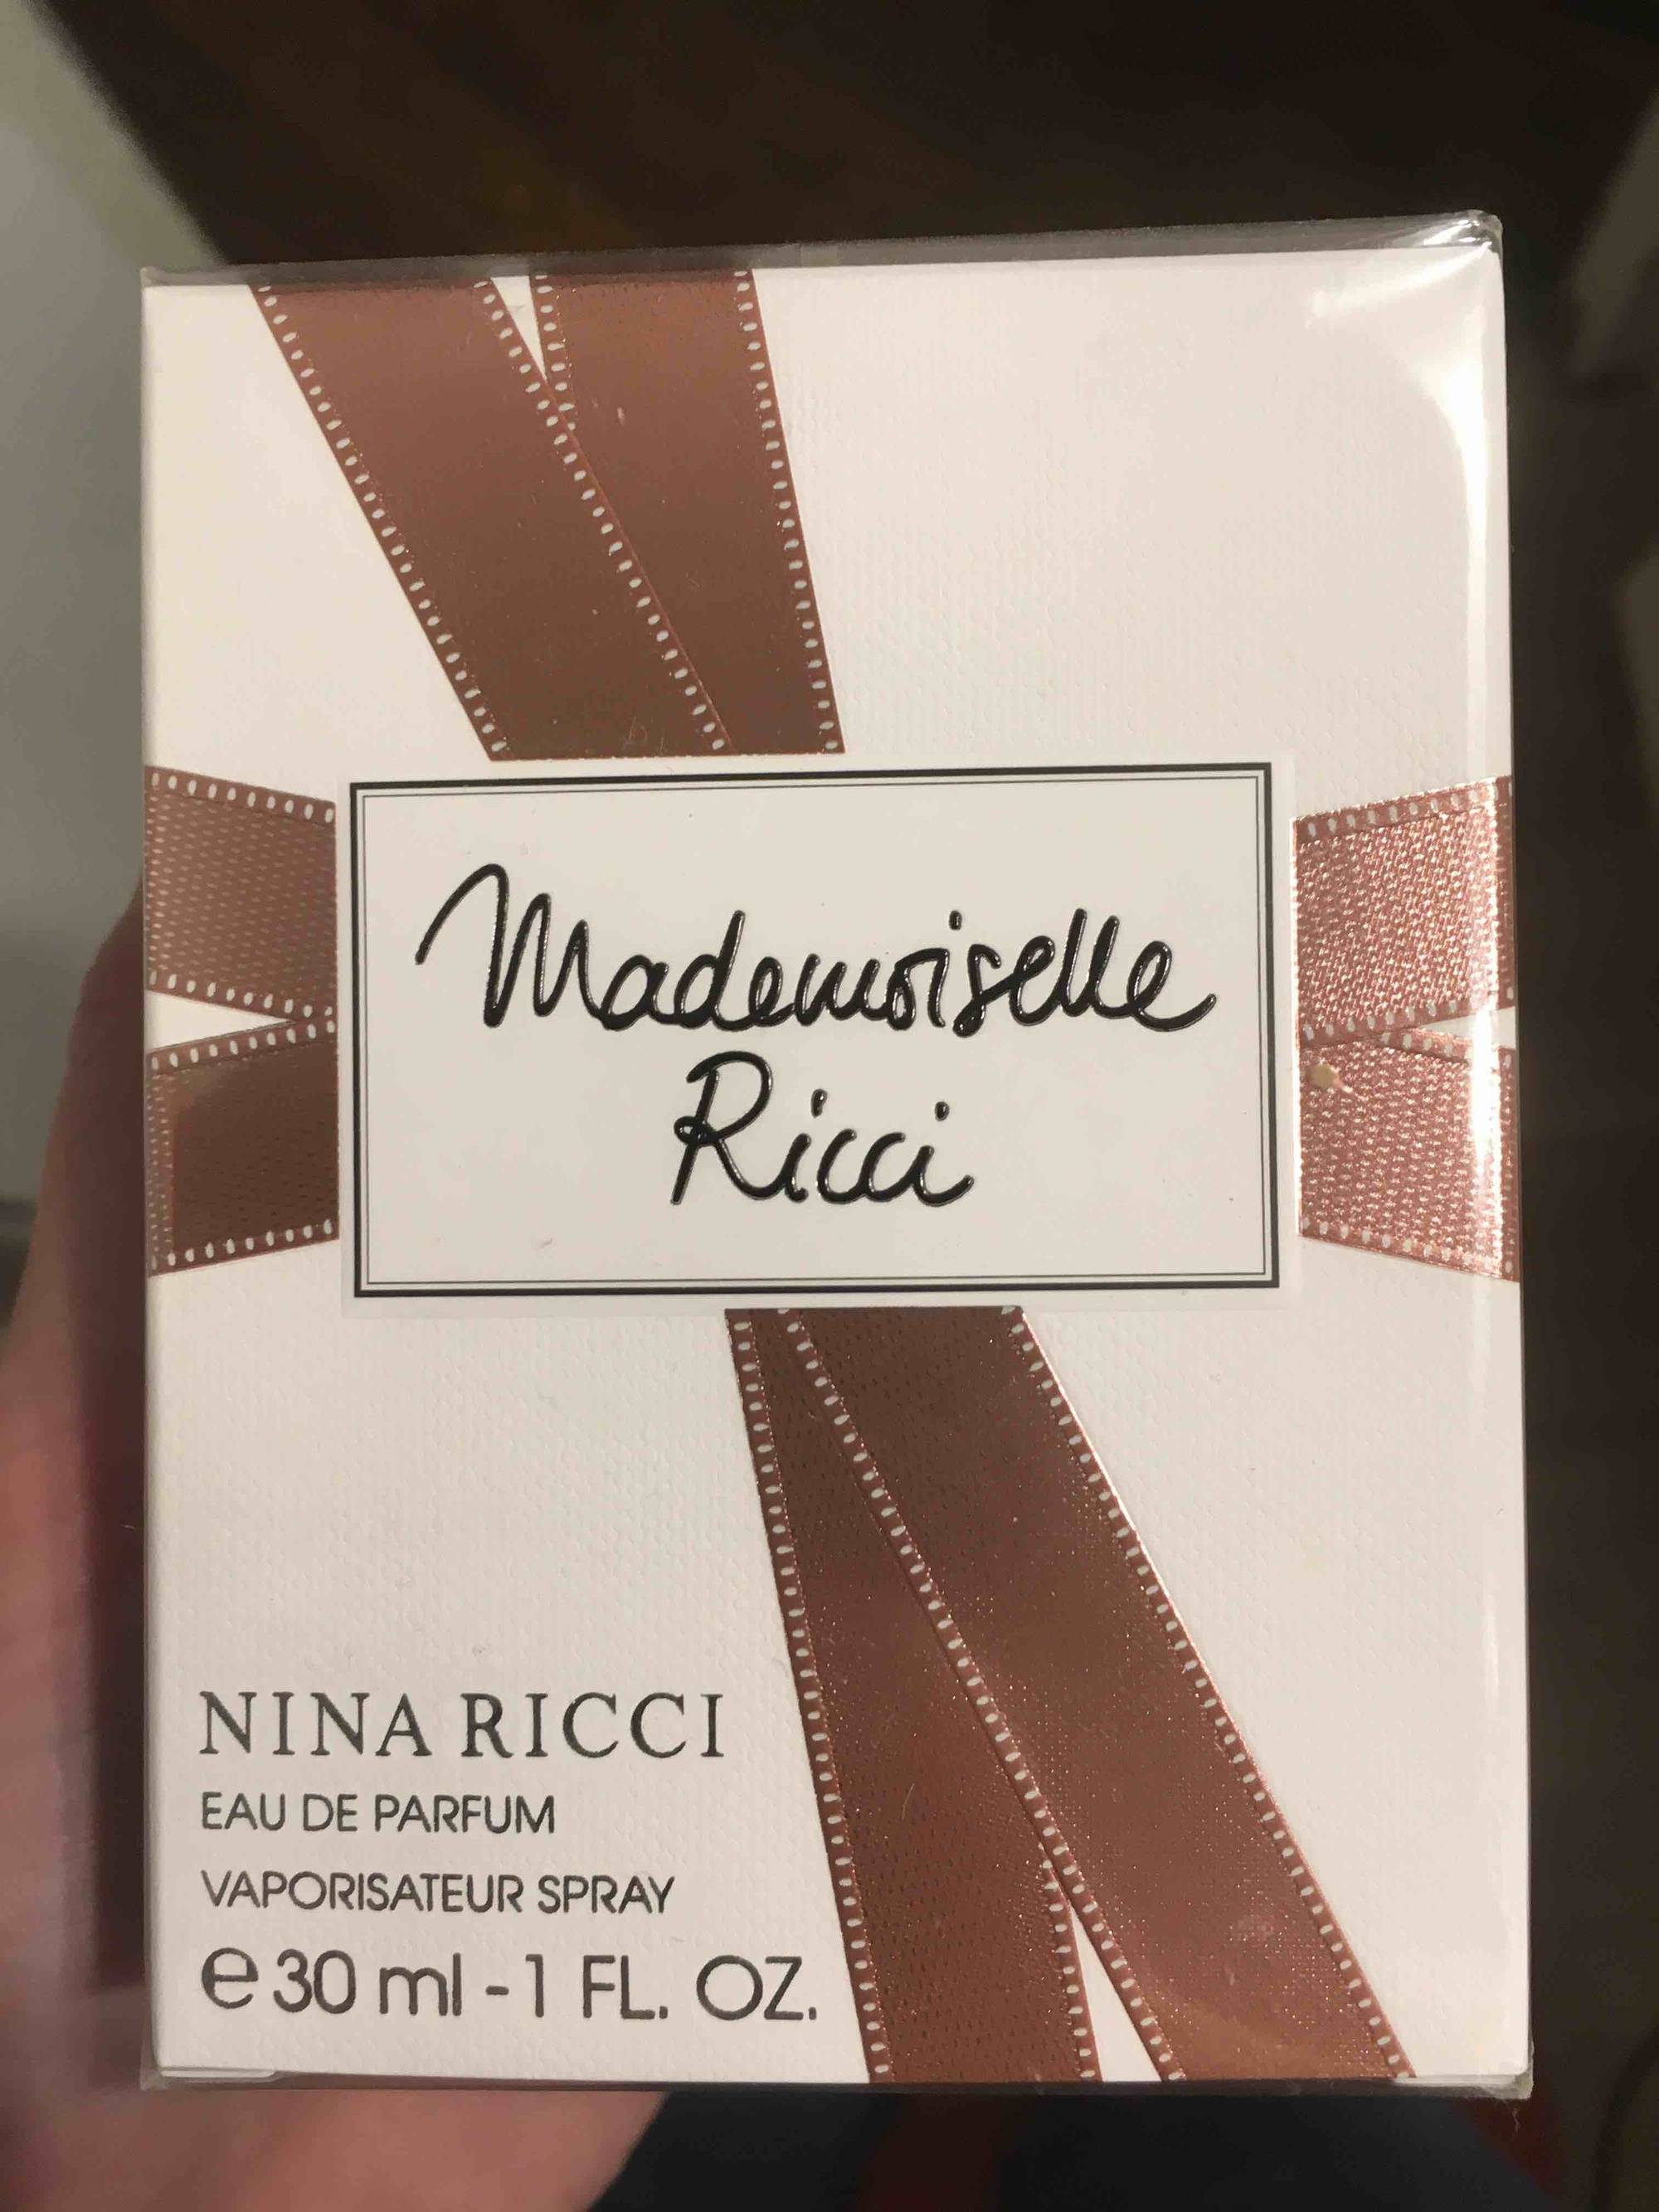 NINA RICCI - Mademoiselle ricci - Eau de parfum